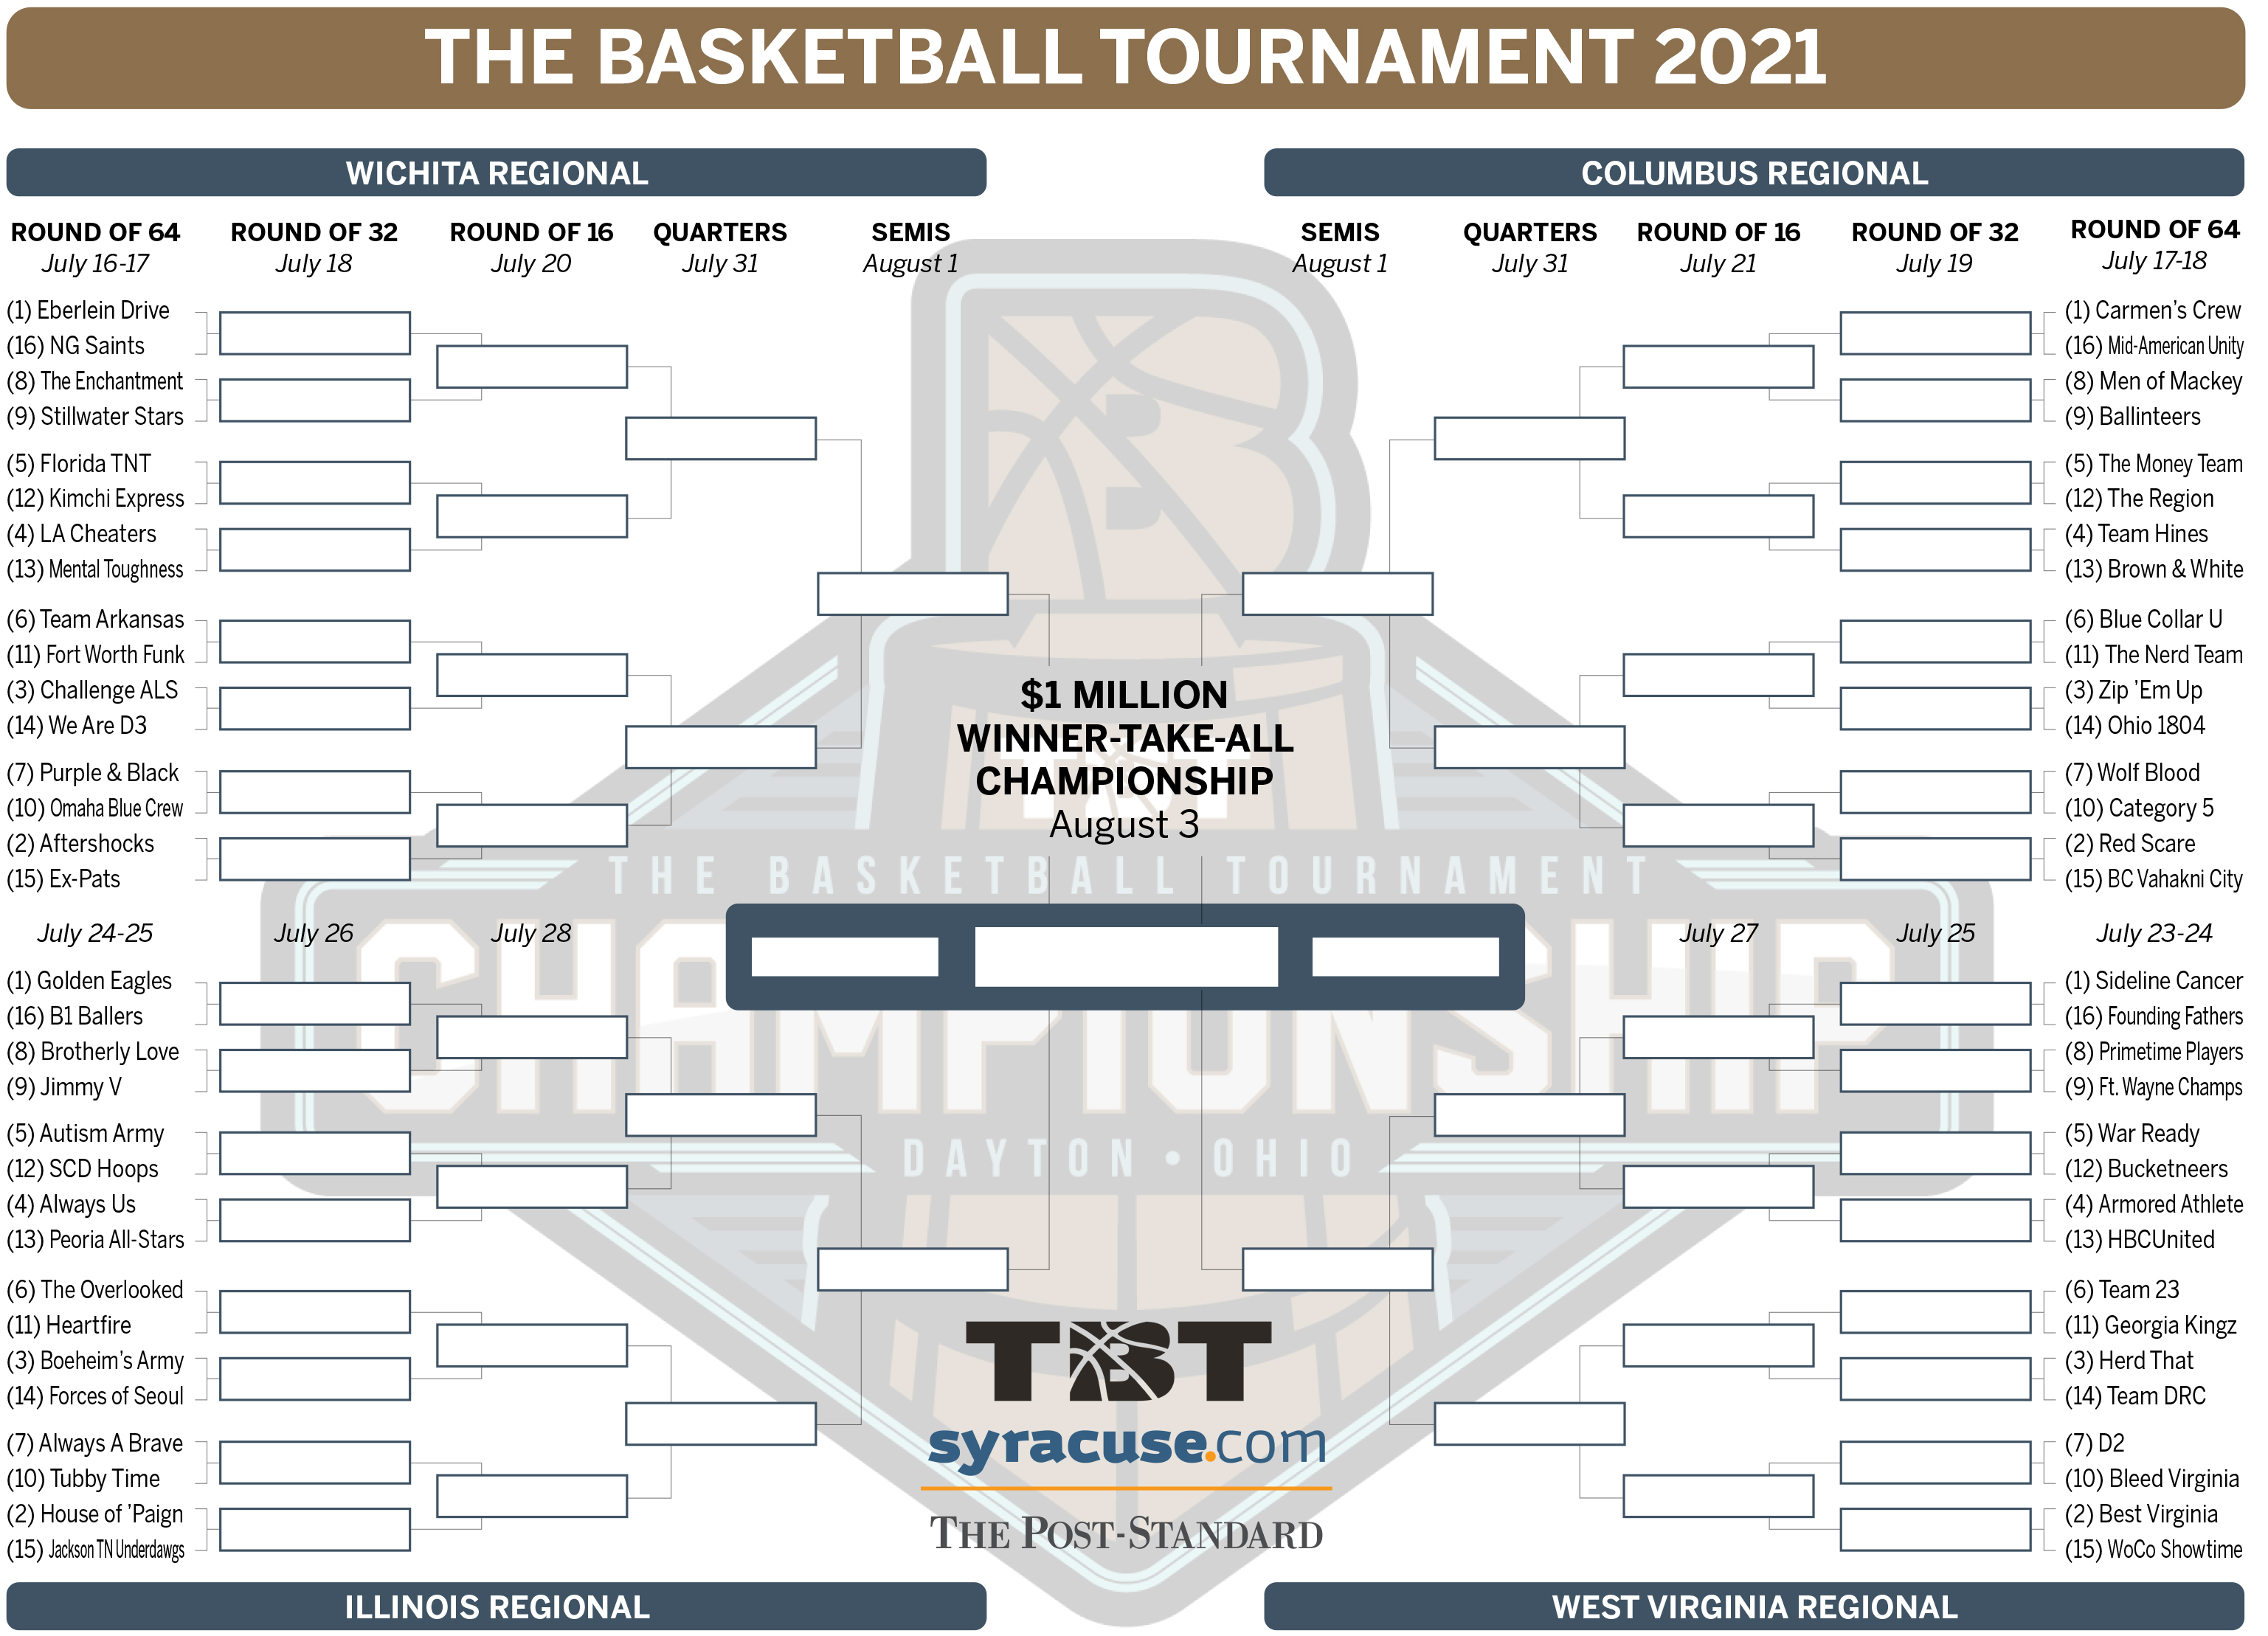 2021_TBT_the_basketball_tournament_bracket_final.jpg